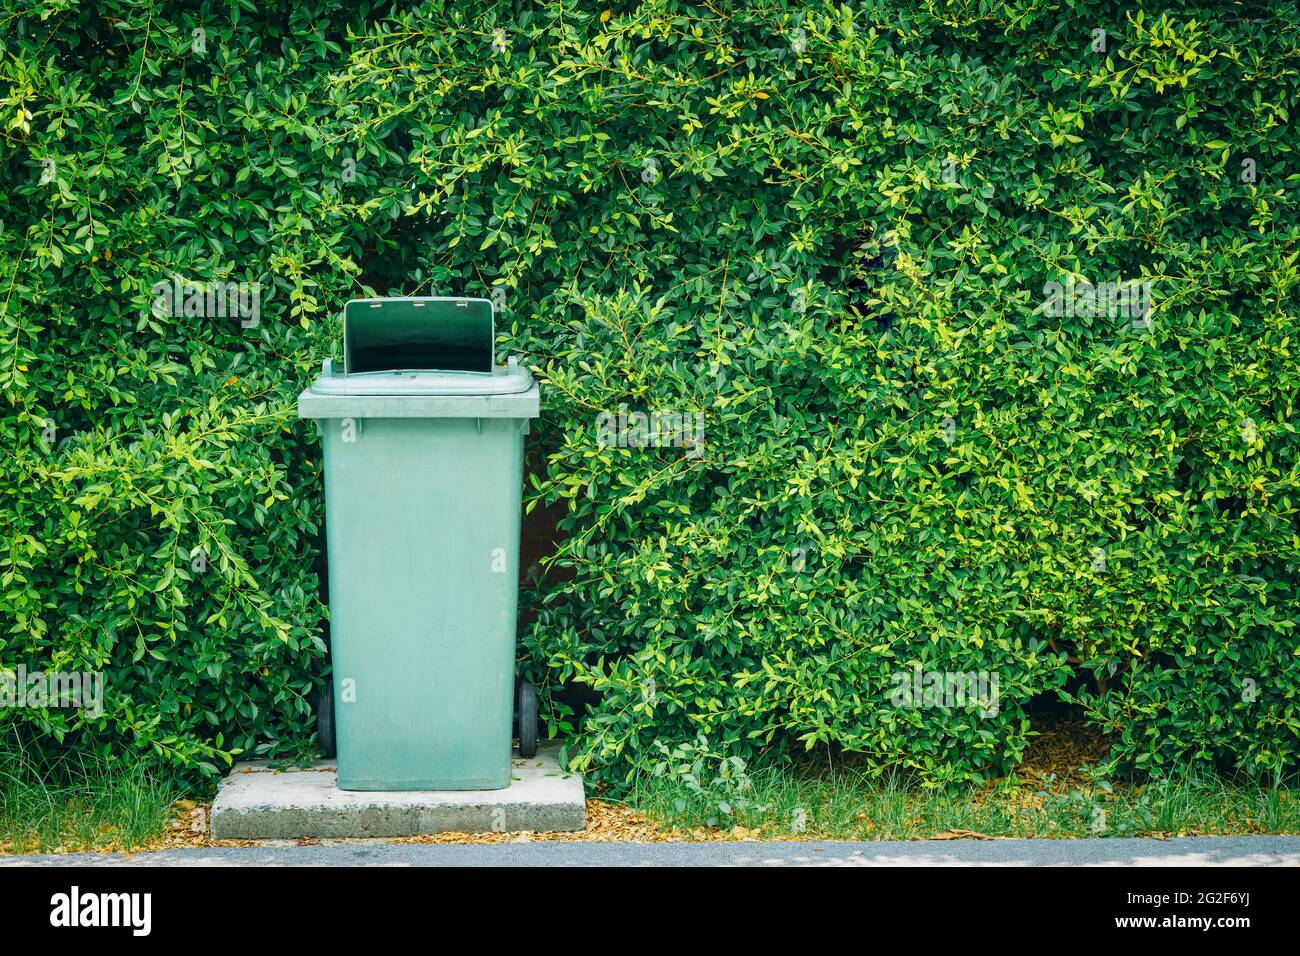 Papelera papelera basura armario de residuos Lugar al aire libre alrededor de la planta verde con espacio para texto para eco ciudad limpia reciclar para el concepto de la naturaleza Foto de stock